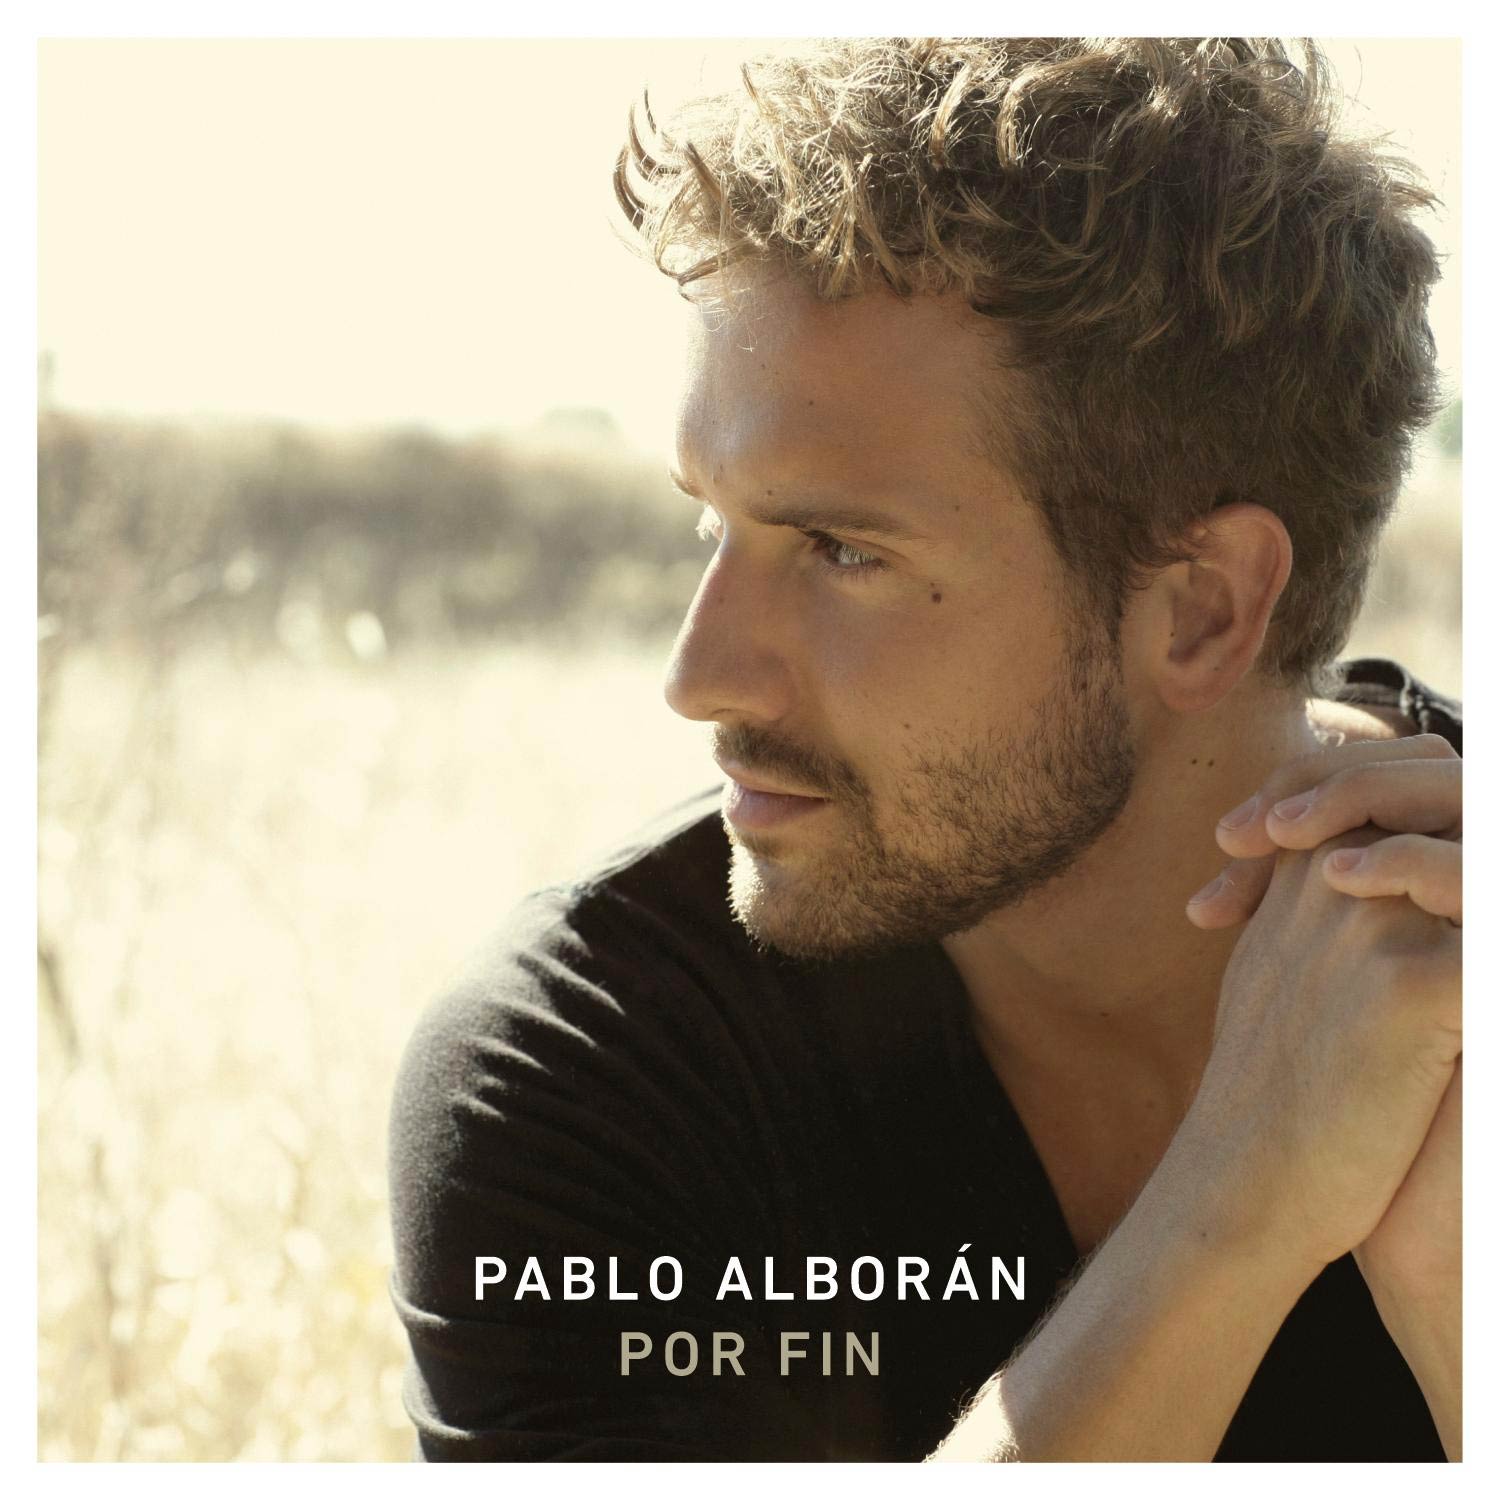 Pablo Alborán: Por fin, la portada de la canción